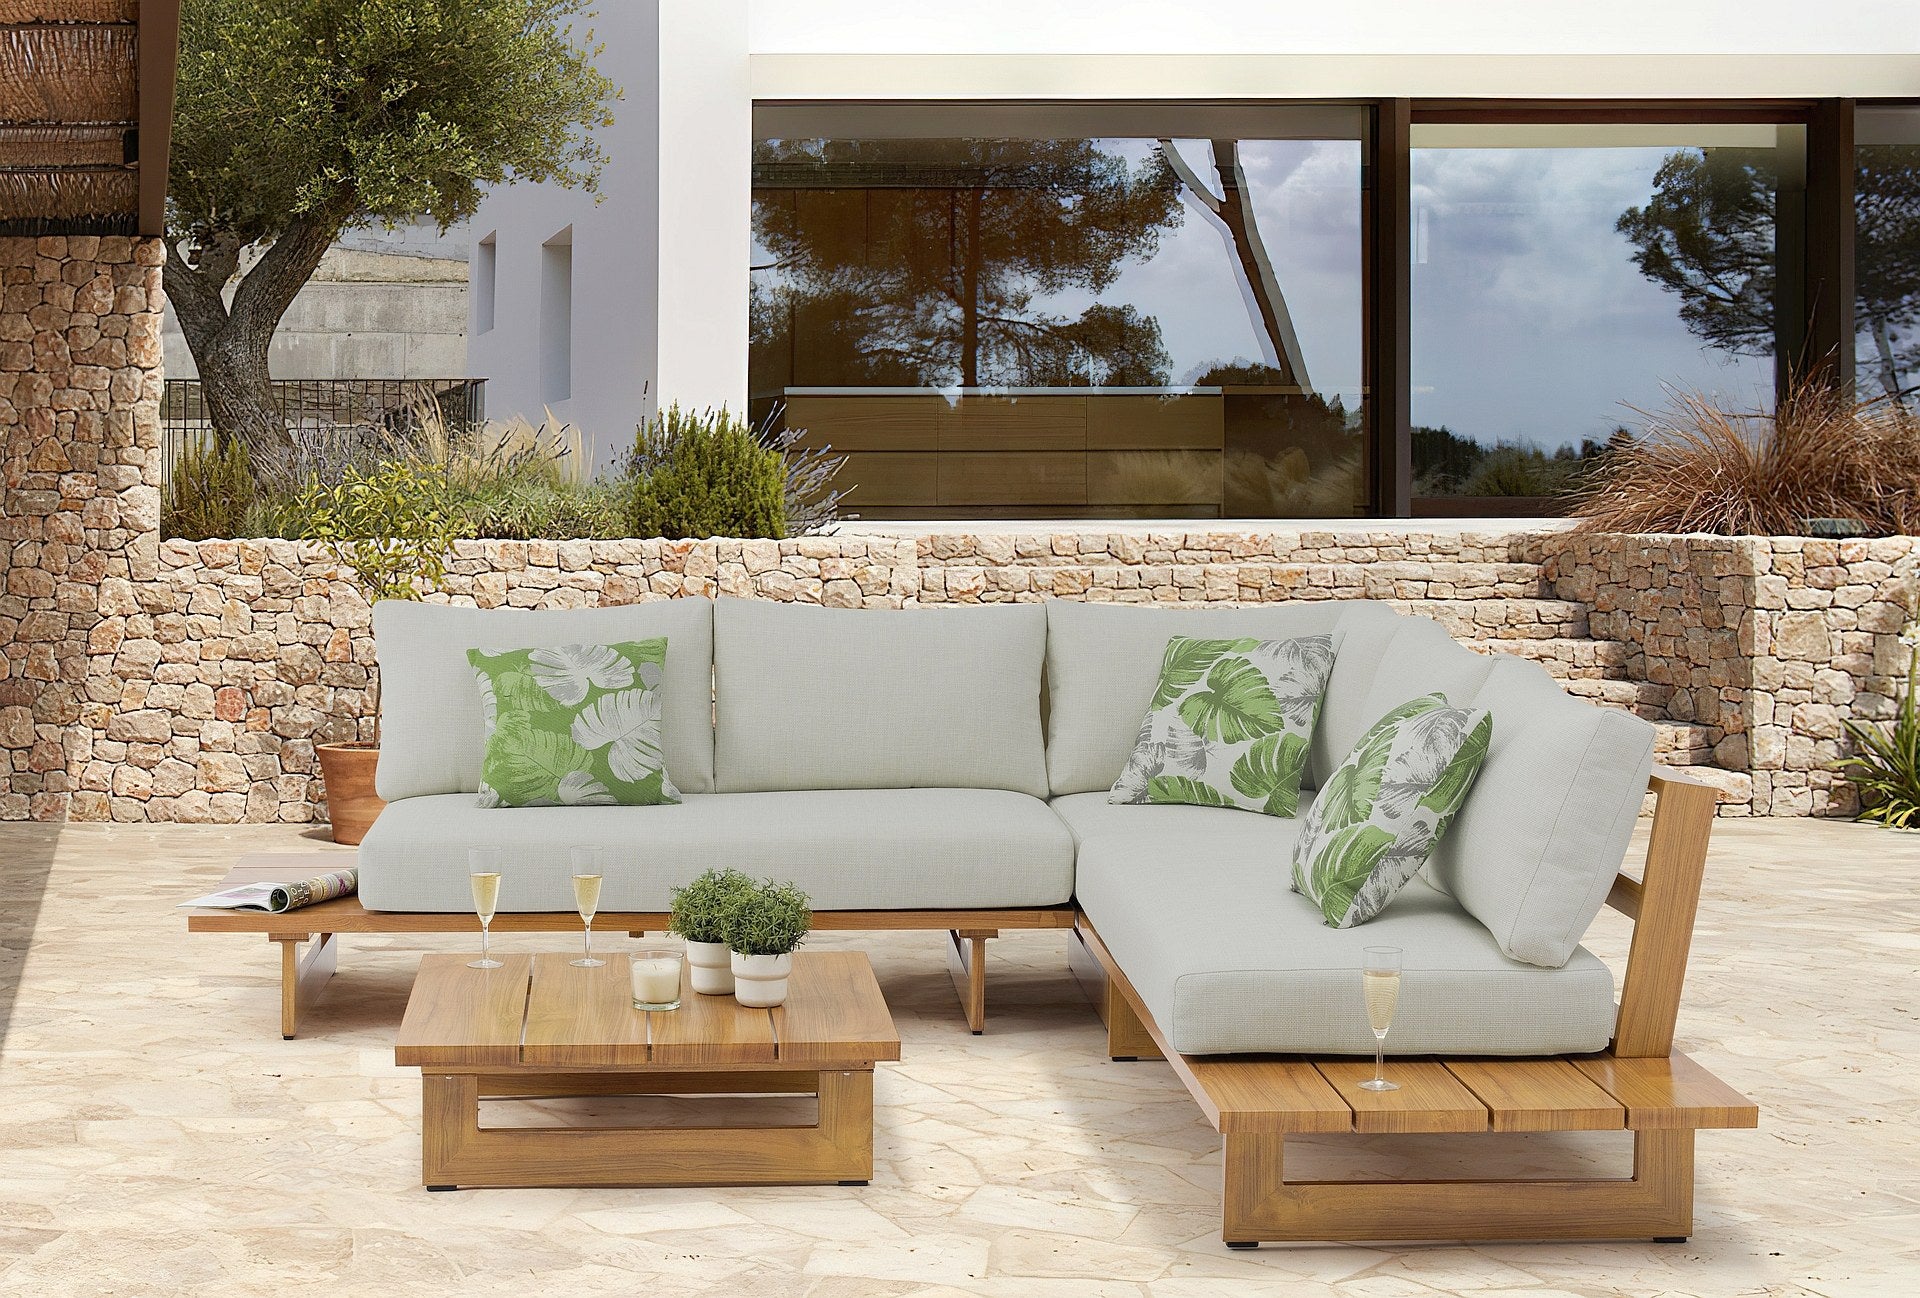 Moderne Alina Garten Lounge Gruppe mit Eckbank und Couchtisch in täuschender Holzoptik aus Aluminium und hellgrauen Kissen, perfekt für stilvolles Entspannen im Freien, erhältlich bei Gartenmöbelshop.at.